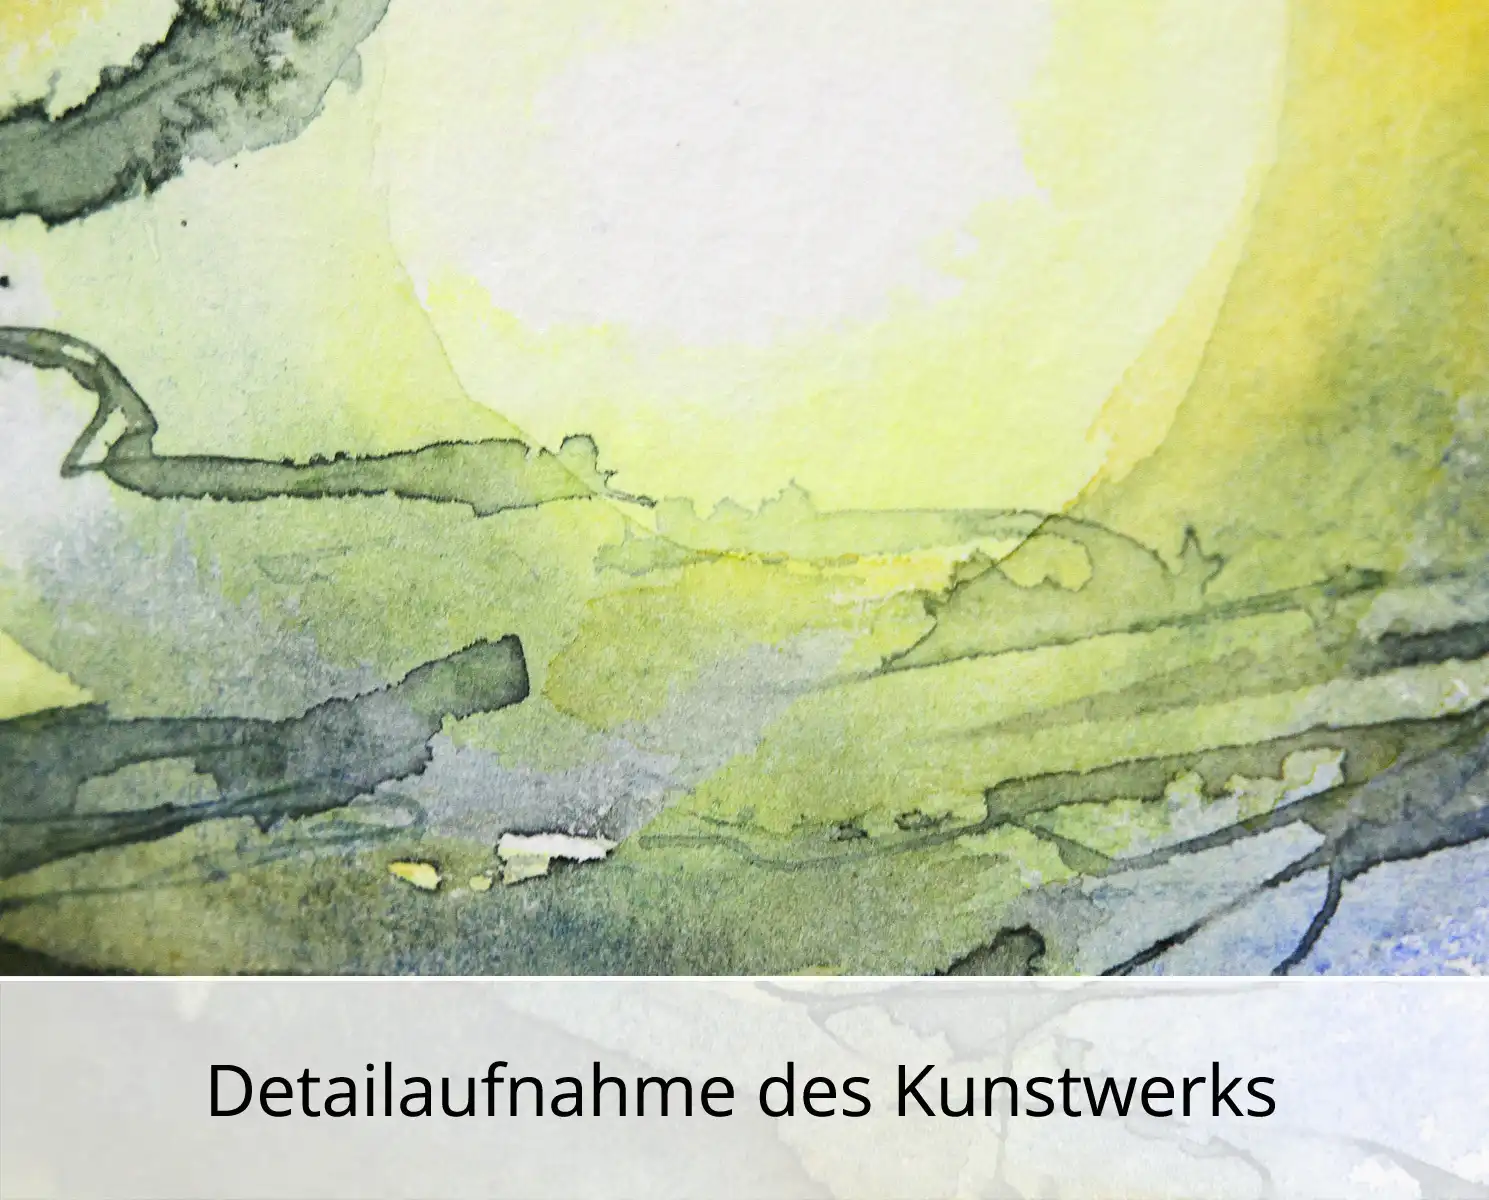 L. Roth: "Regen vor der Küste", originale Grafik/Zeichnung (Unikat)